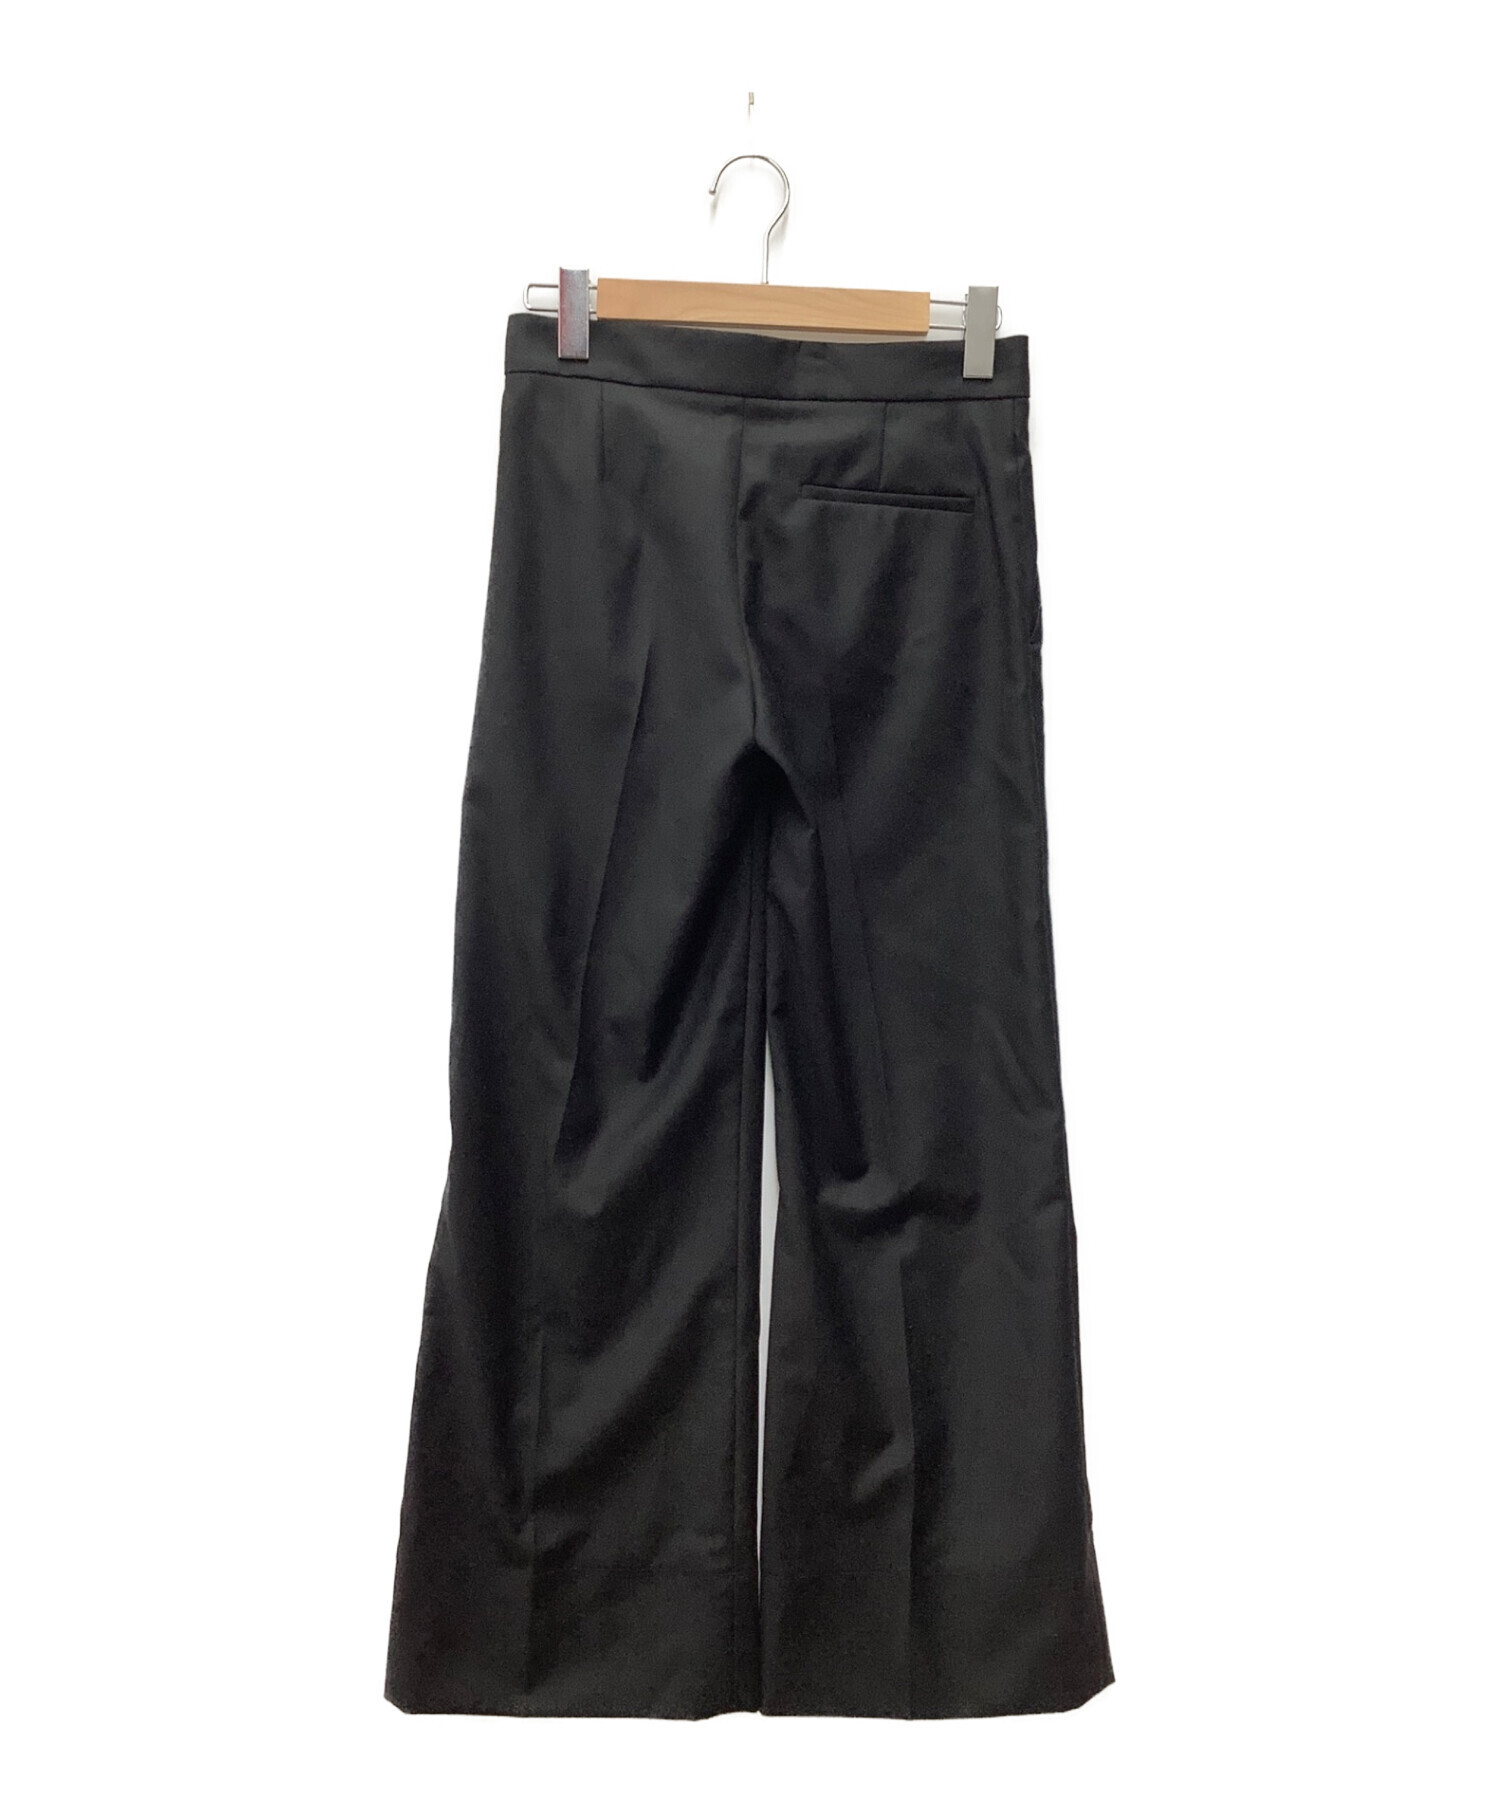 toteme (トーテム) パンツ ブラック サイズ:SIZE 34 未使用品